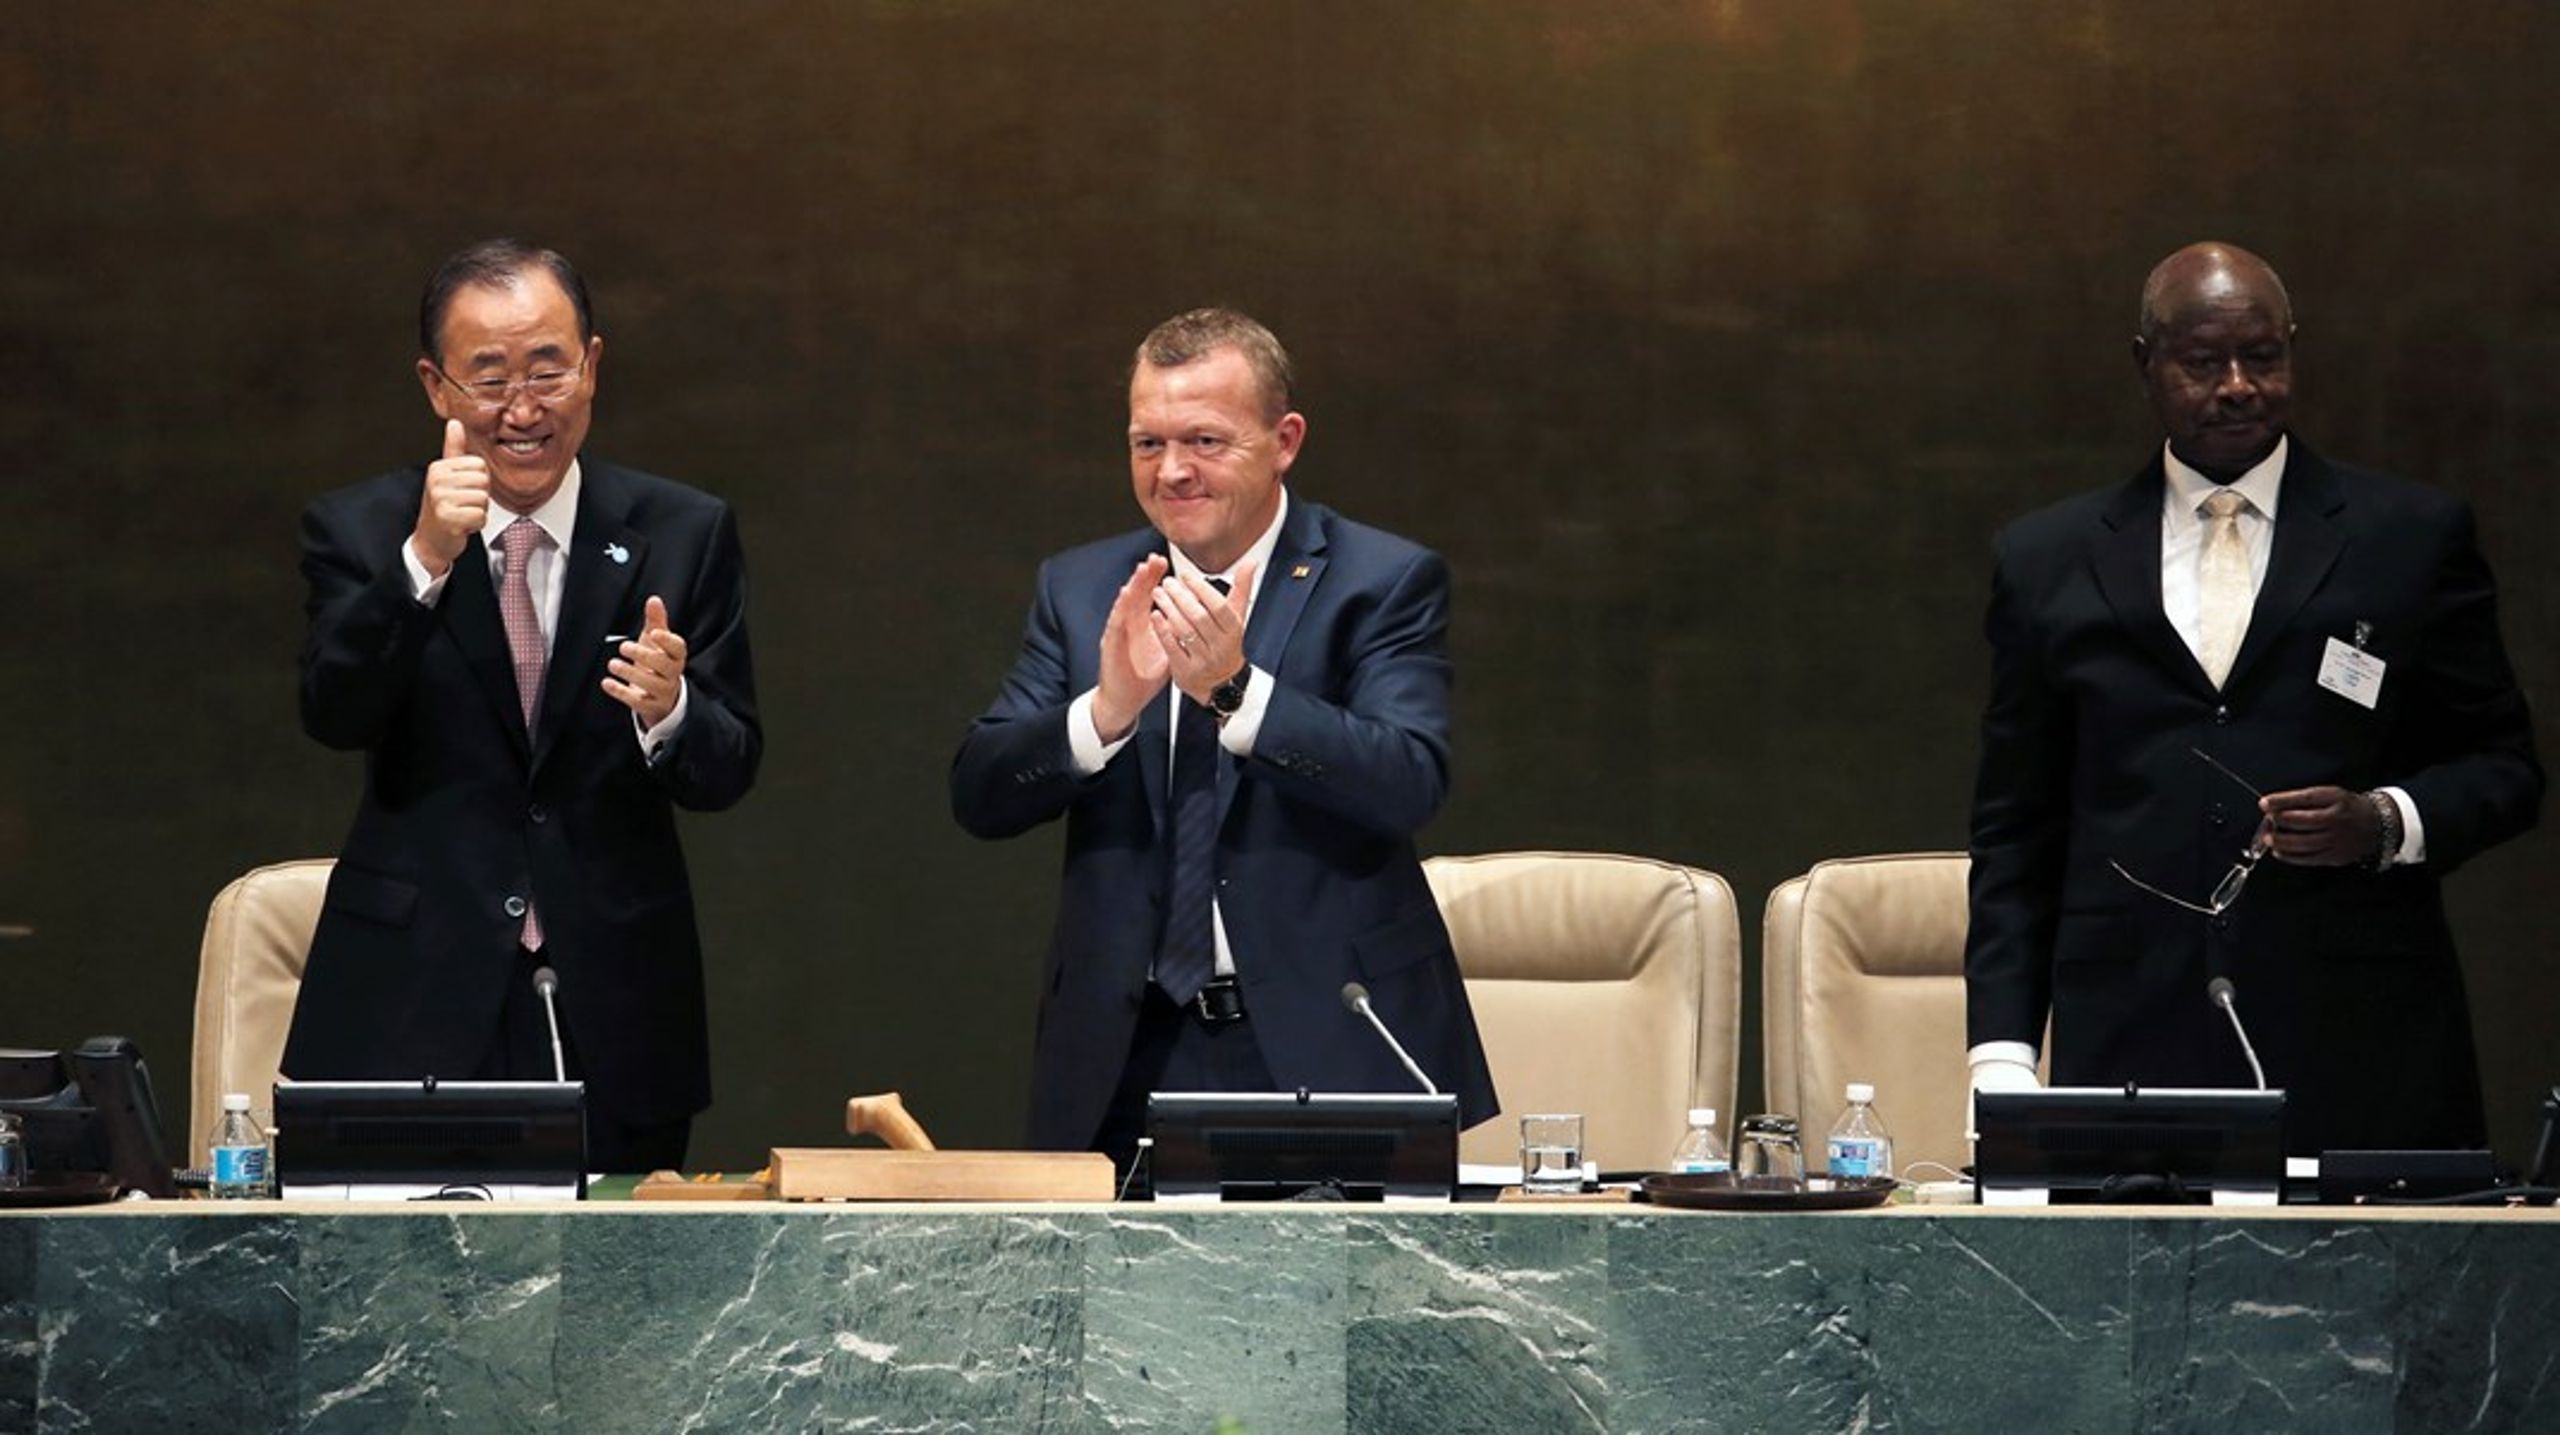 Da Danmark havde formandskabet ved FN's generalforsamling i 2015, tilfaldt det Lars Løkke Rasmussen som dansk statsminister at svinge hammeren, da de 17 verdensmål blev vedtaget. På billedet er han flankeret af daværende generalsekretær Ban Ki-moon og Ugandas præsident,&nbsp;Yoweri Museveni.&nbsp;